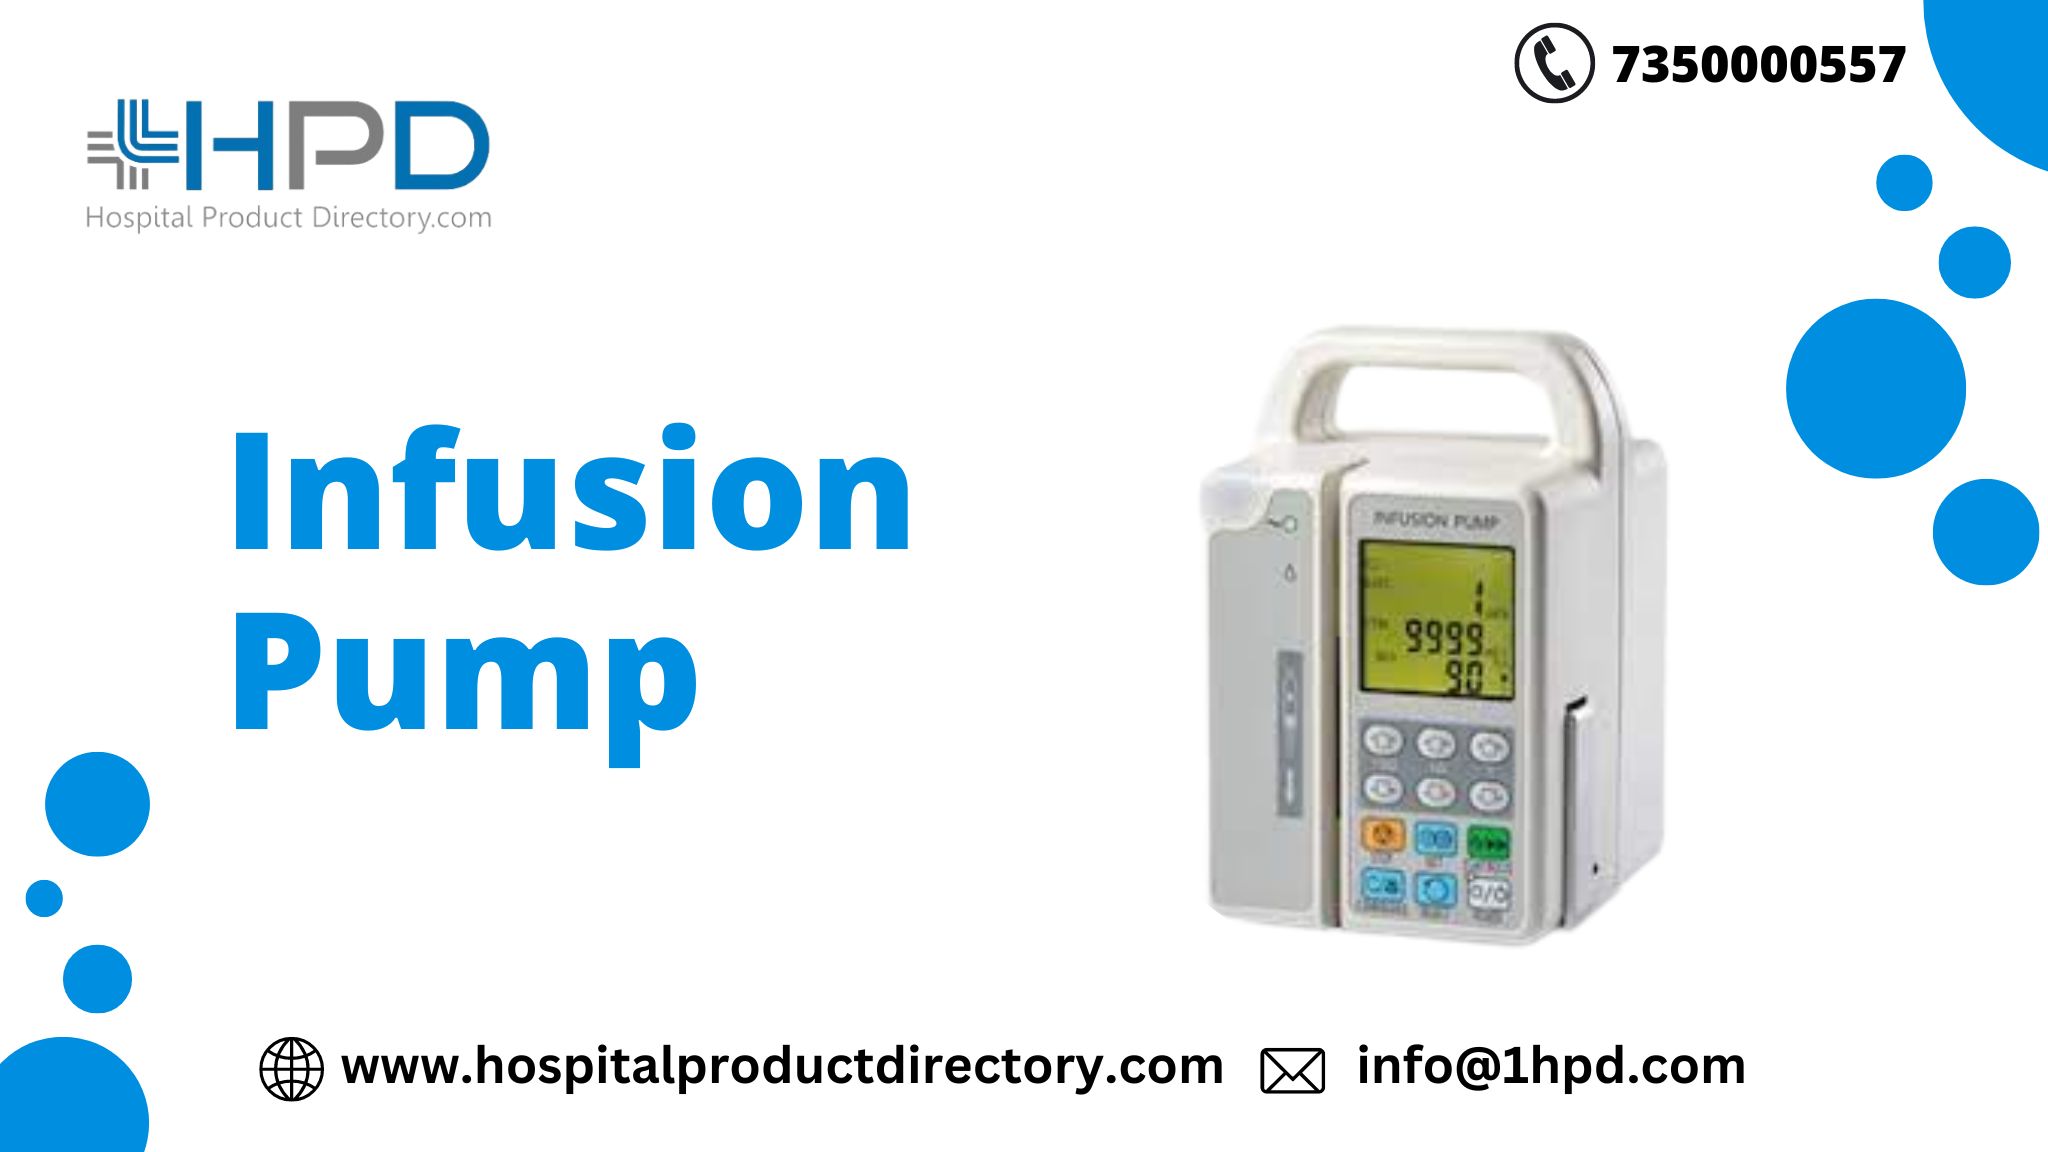 infusion pump 2048 1152-627e17b5